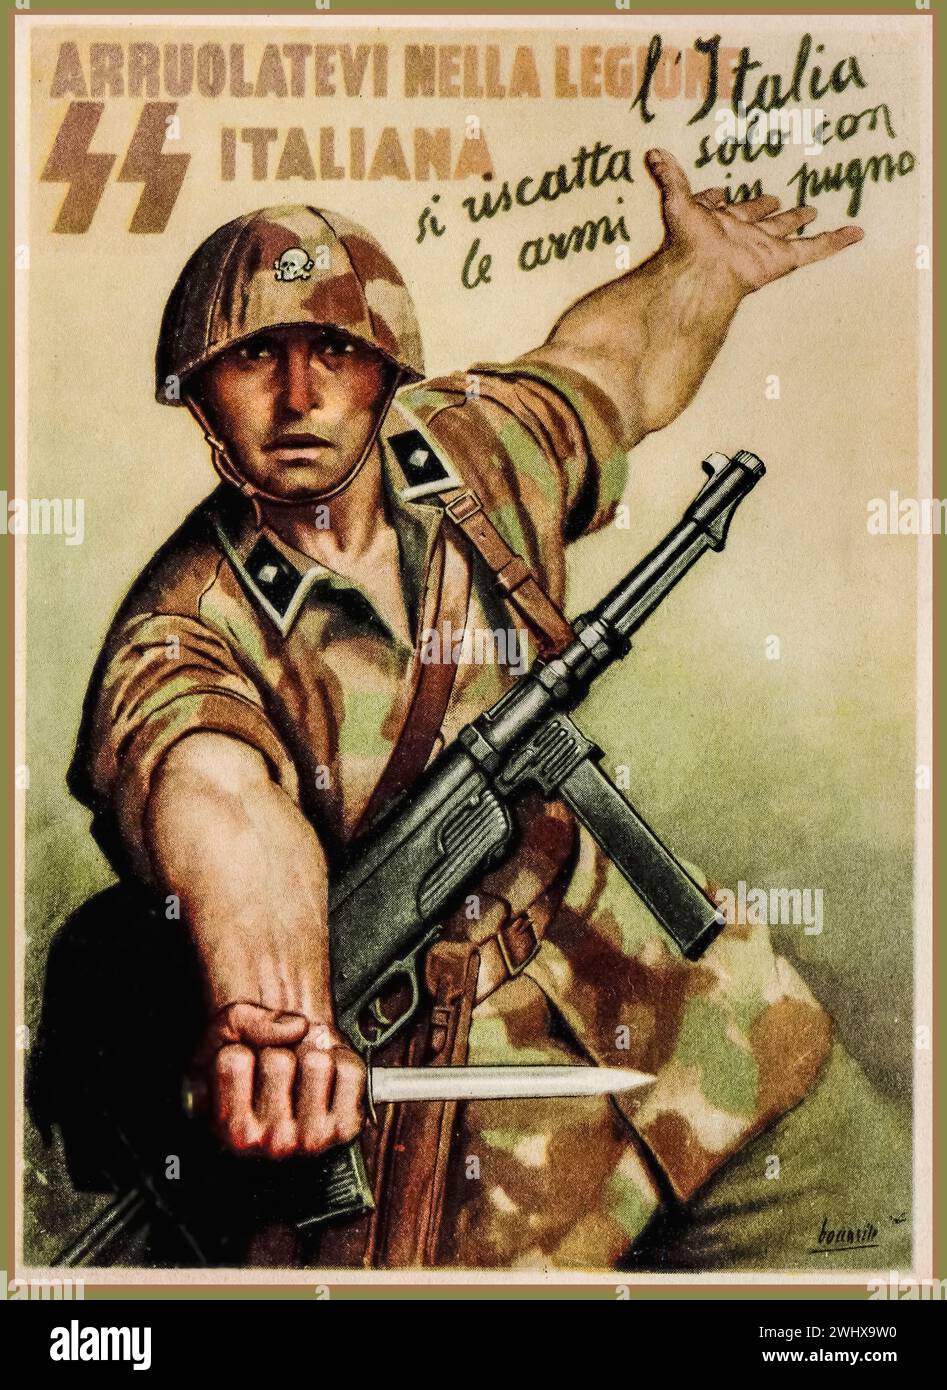 WW2 années 1940 Italie Nazi SS recrutement affiche de propagande pour l'AXE nazi Légion italienne. "L'Italie ne se rachètera qu'avec des armes en main" Italie Axis partenaire avec l'Allemagne nazie. Seconde Guerre mondiale seconde Guerre mondiale Banque D'Images